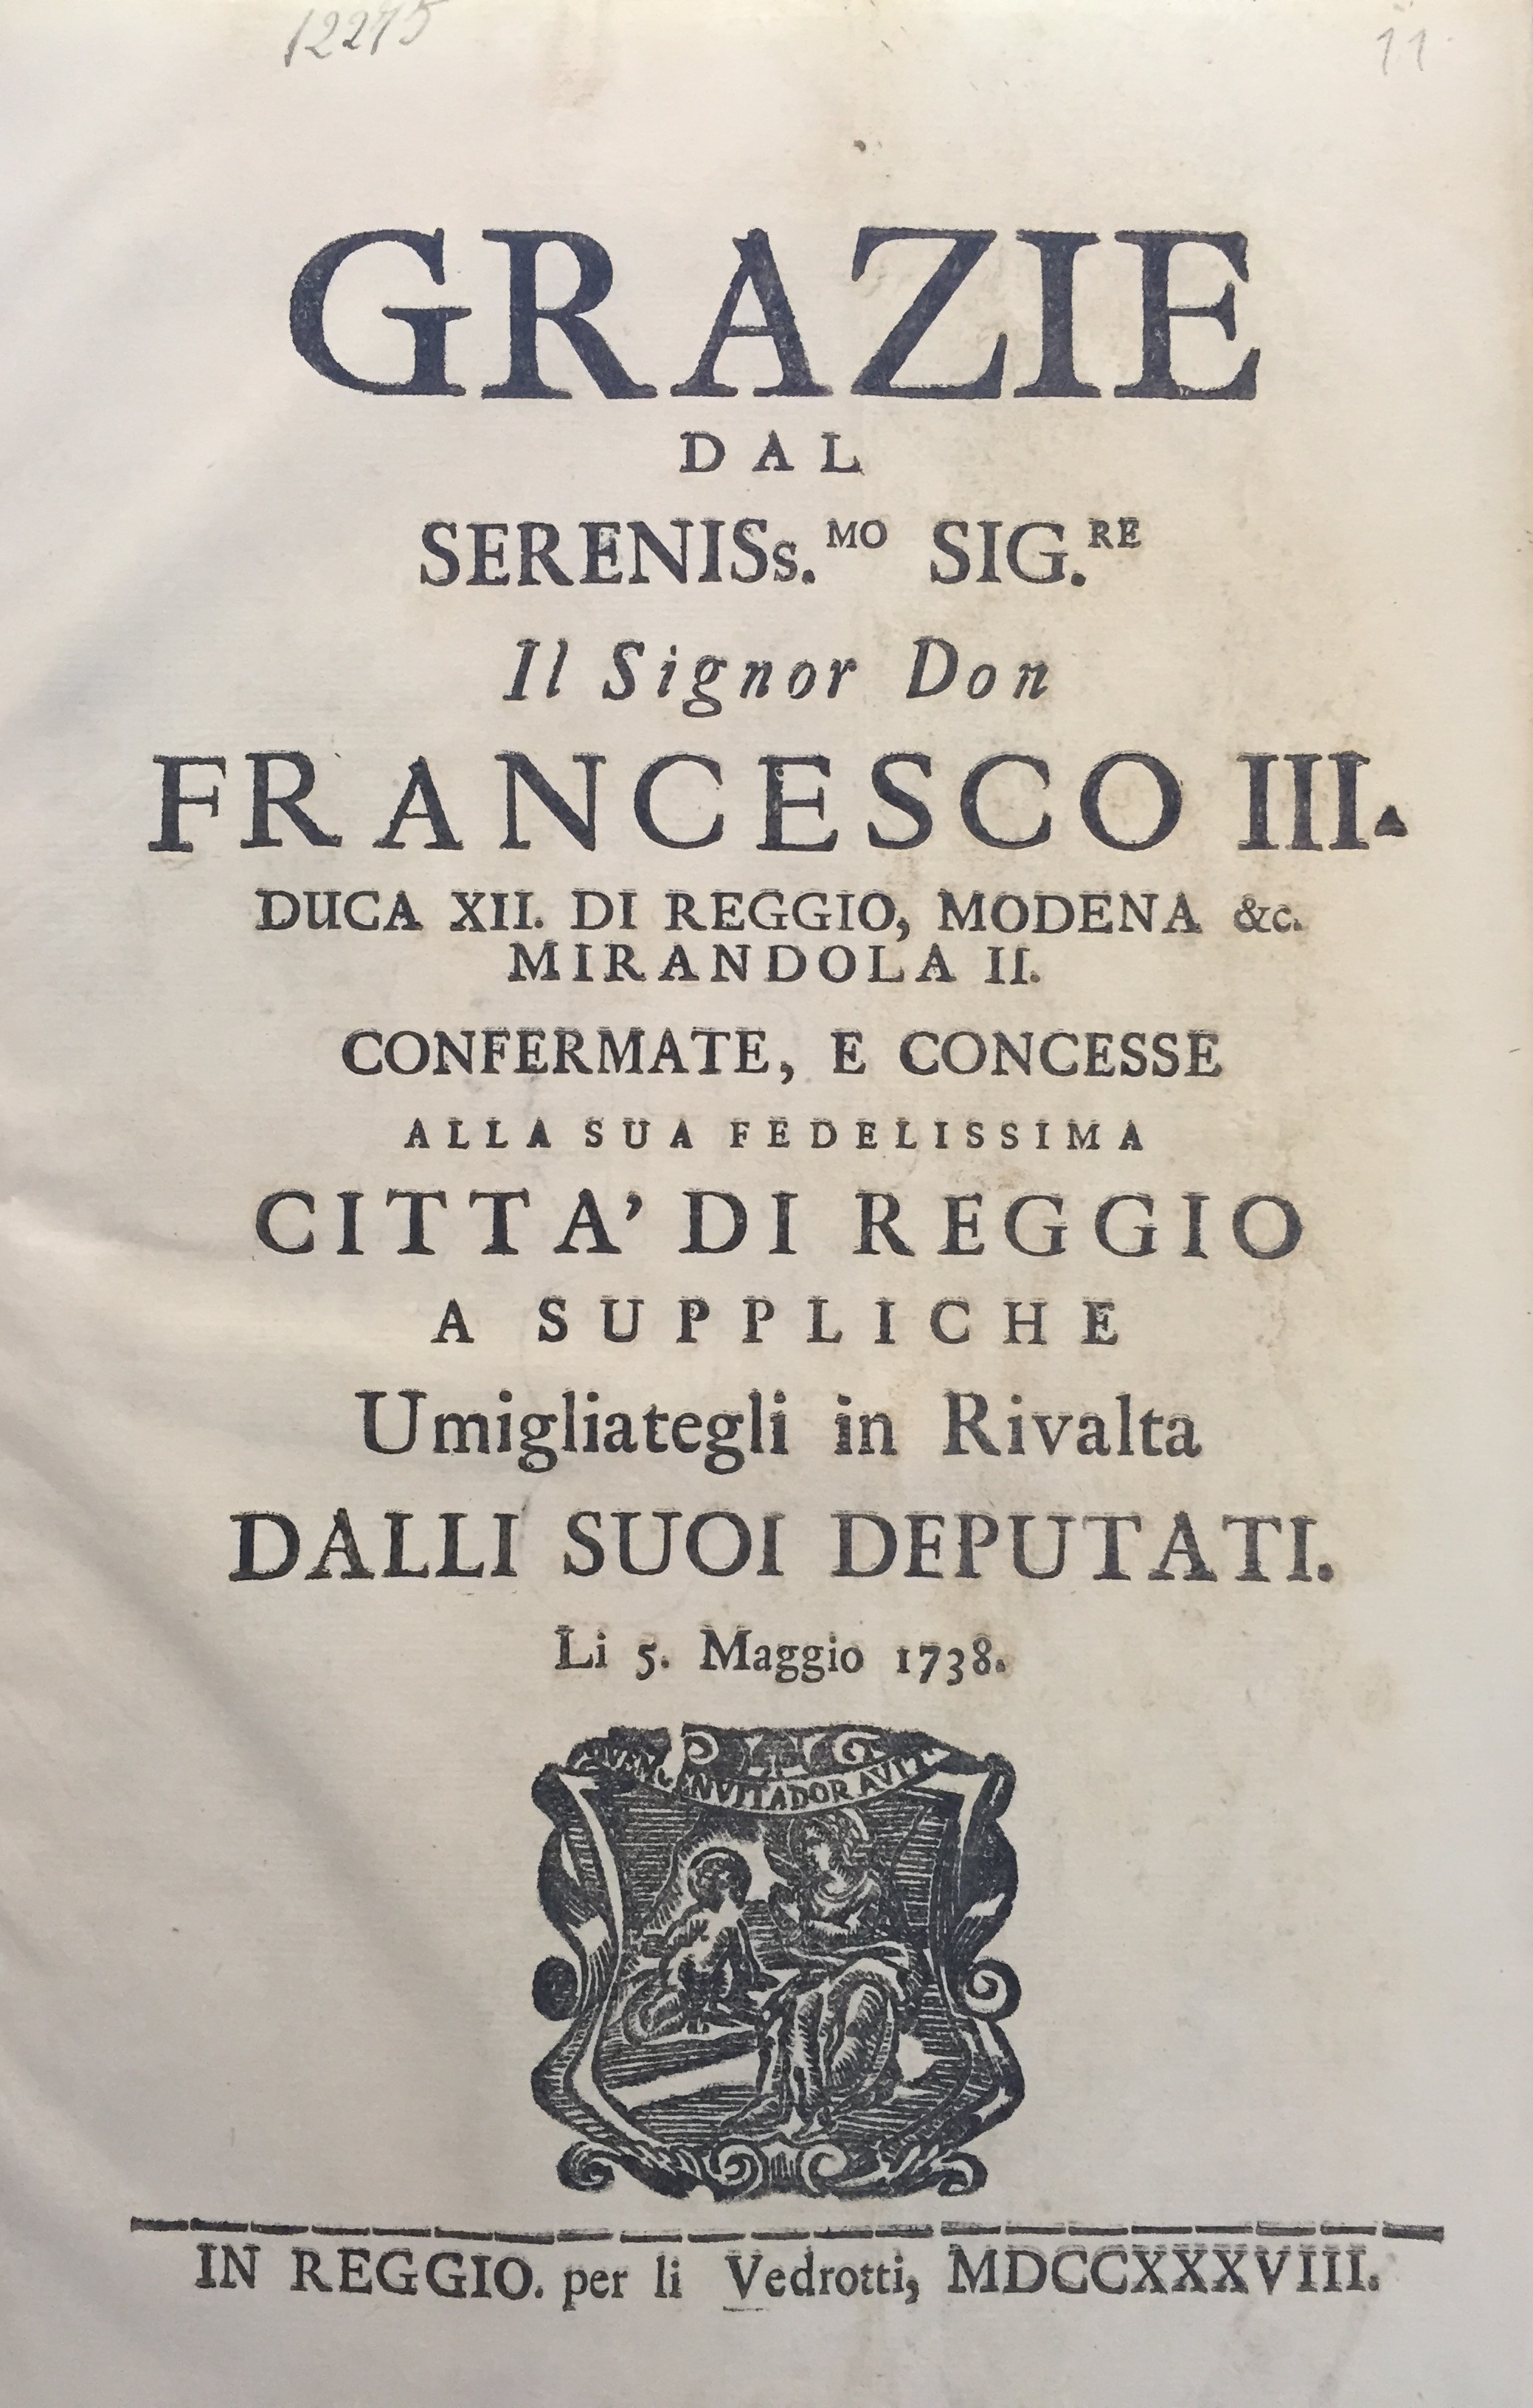 Grazie dal sereniss.mo sig.re il signor don Francesco III duca XII di Reggio, Modena &c. Mirandola II confermate, e concesse alla sua fedelissima città di Reggio 